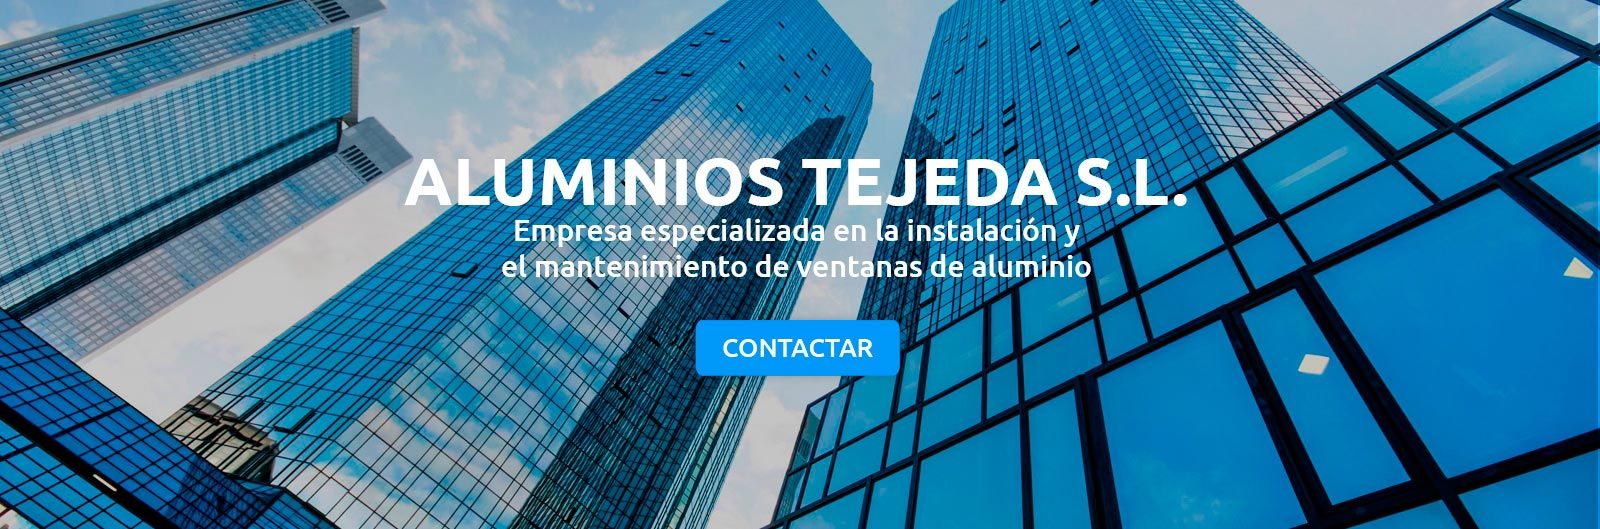 Aluminios Tejeda S.L. edificios con titulo 1